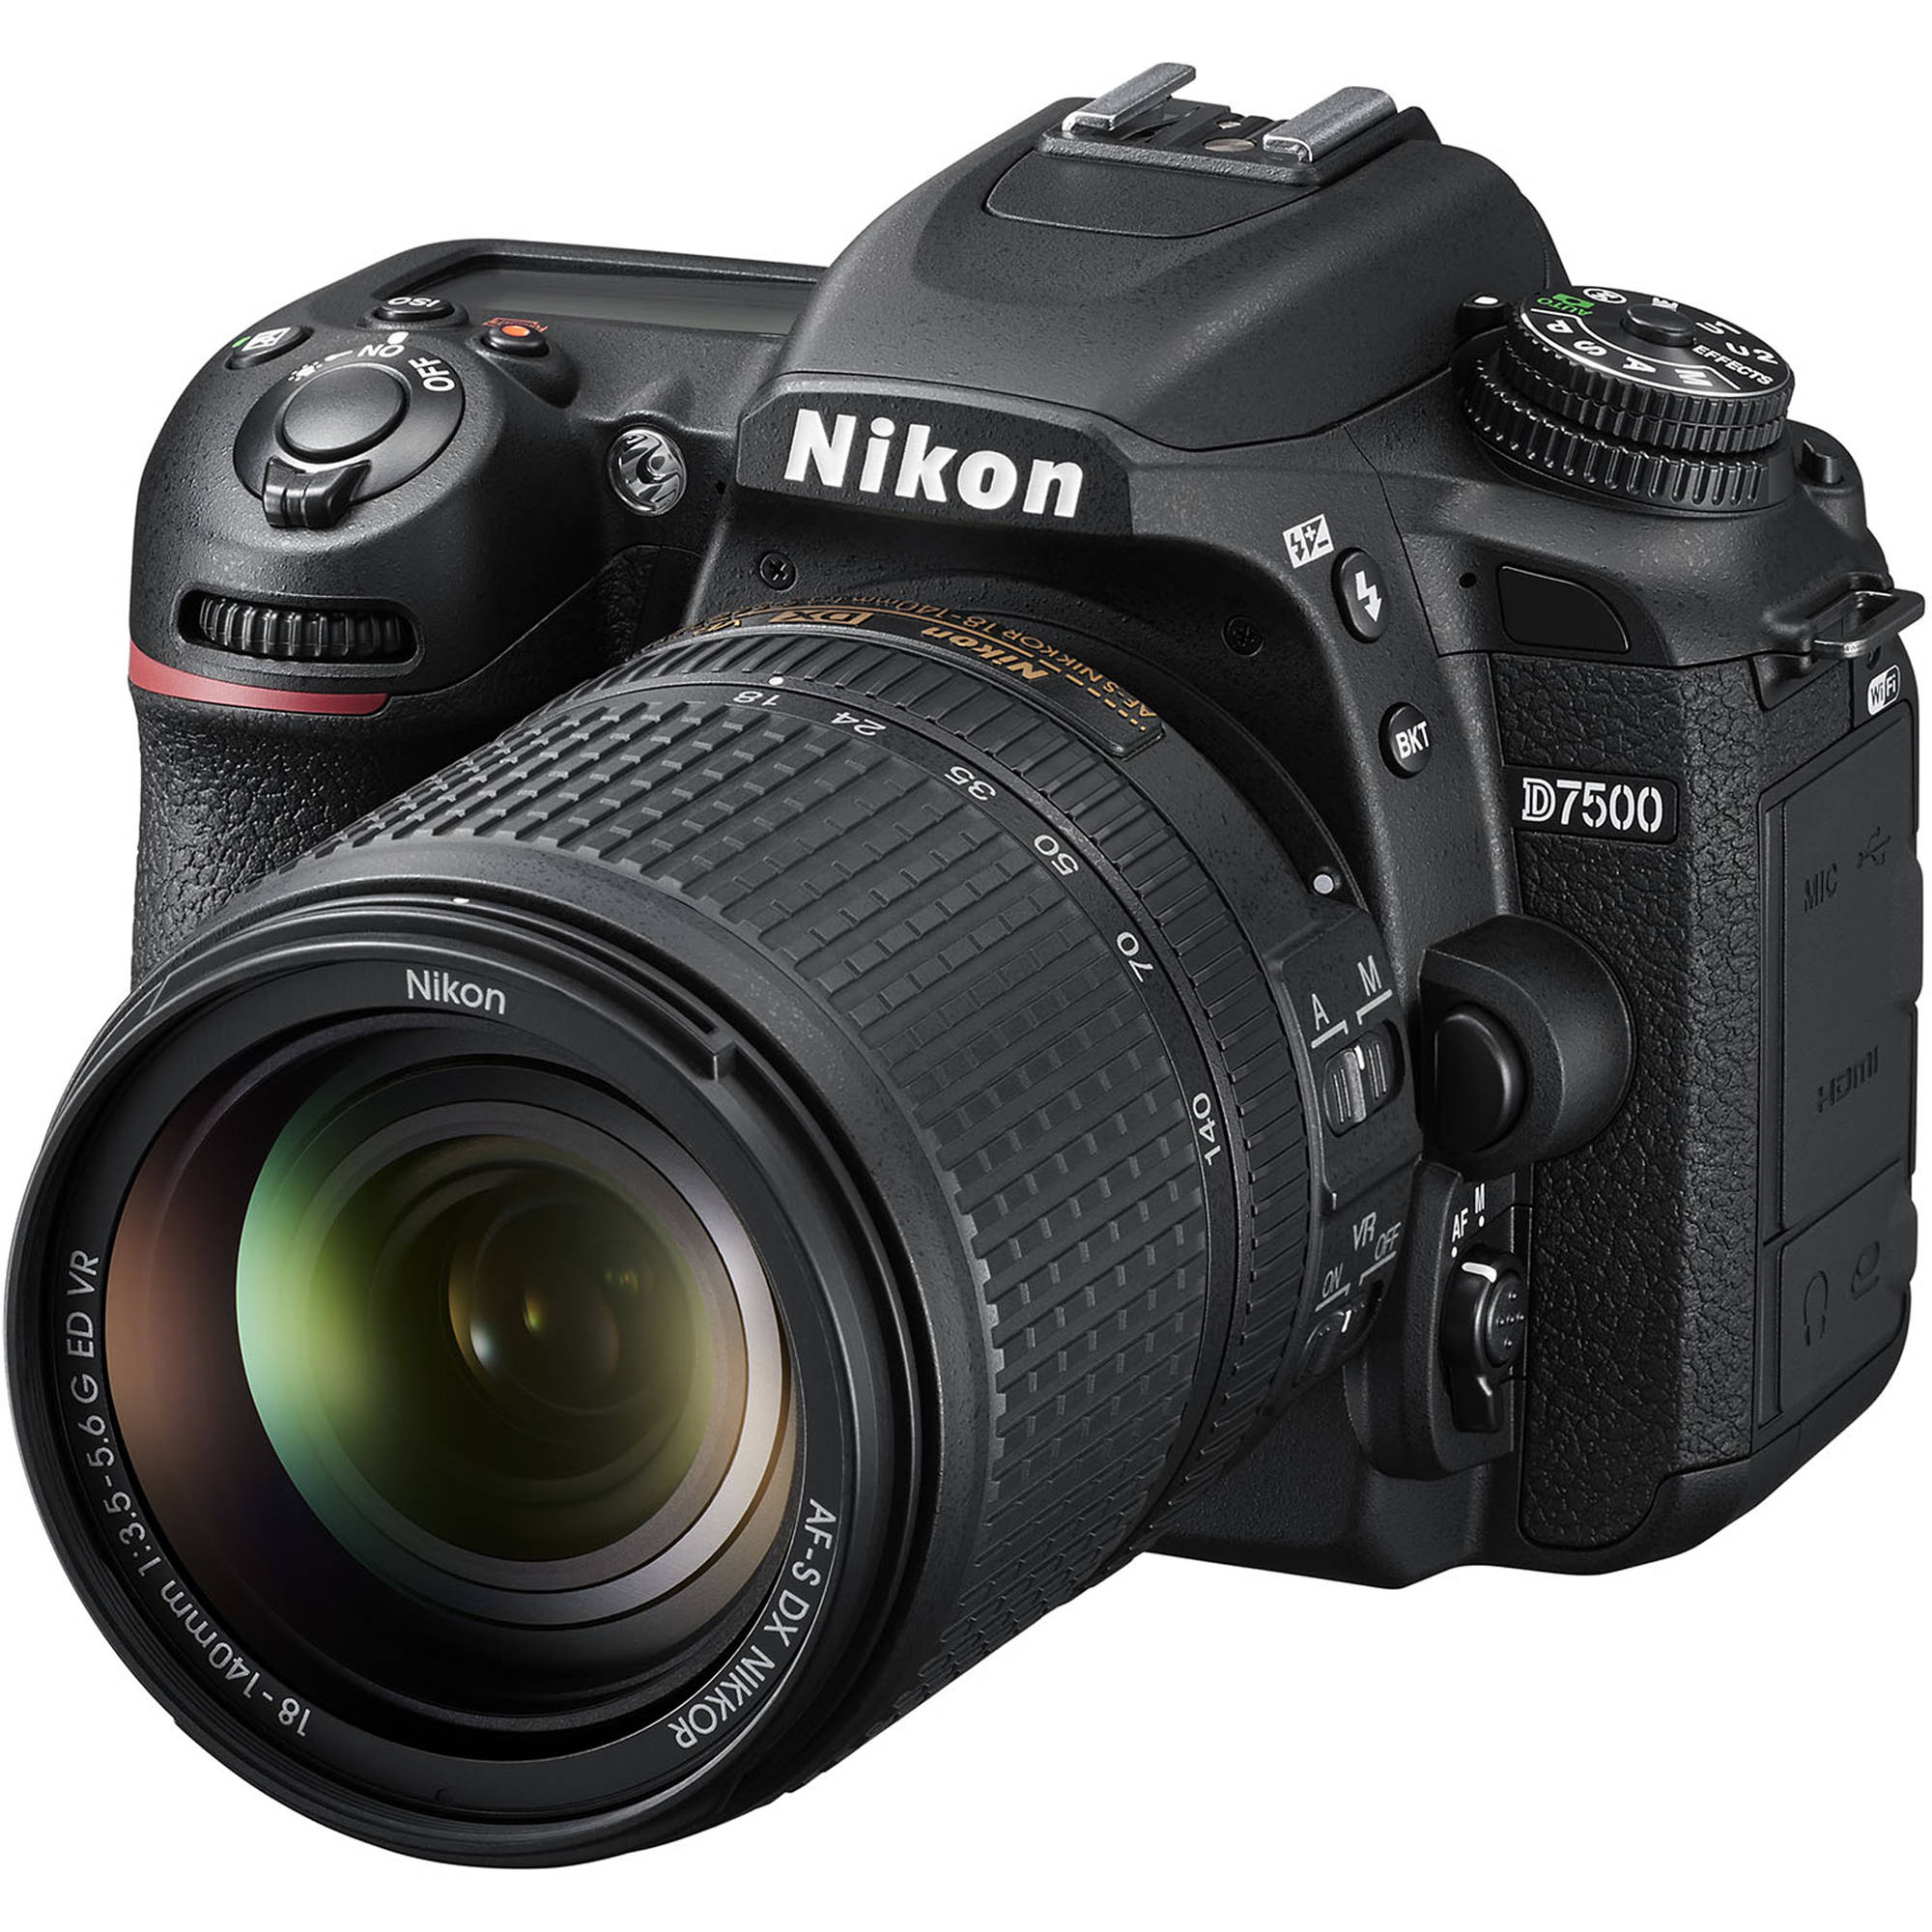 Nikon D7500 kit 18-140 F/3.5-5.6 G ED VR (Mới 100%) - Bảo hành chính hãng VIC-VN 01 năm trên toàn quốc Cover